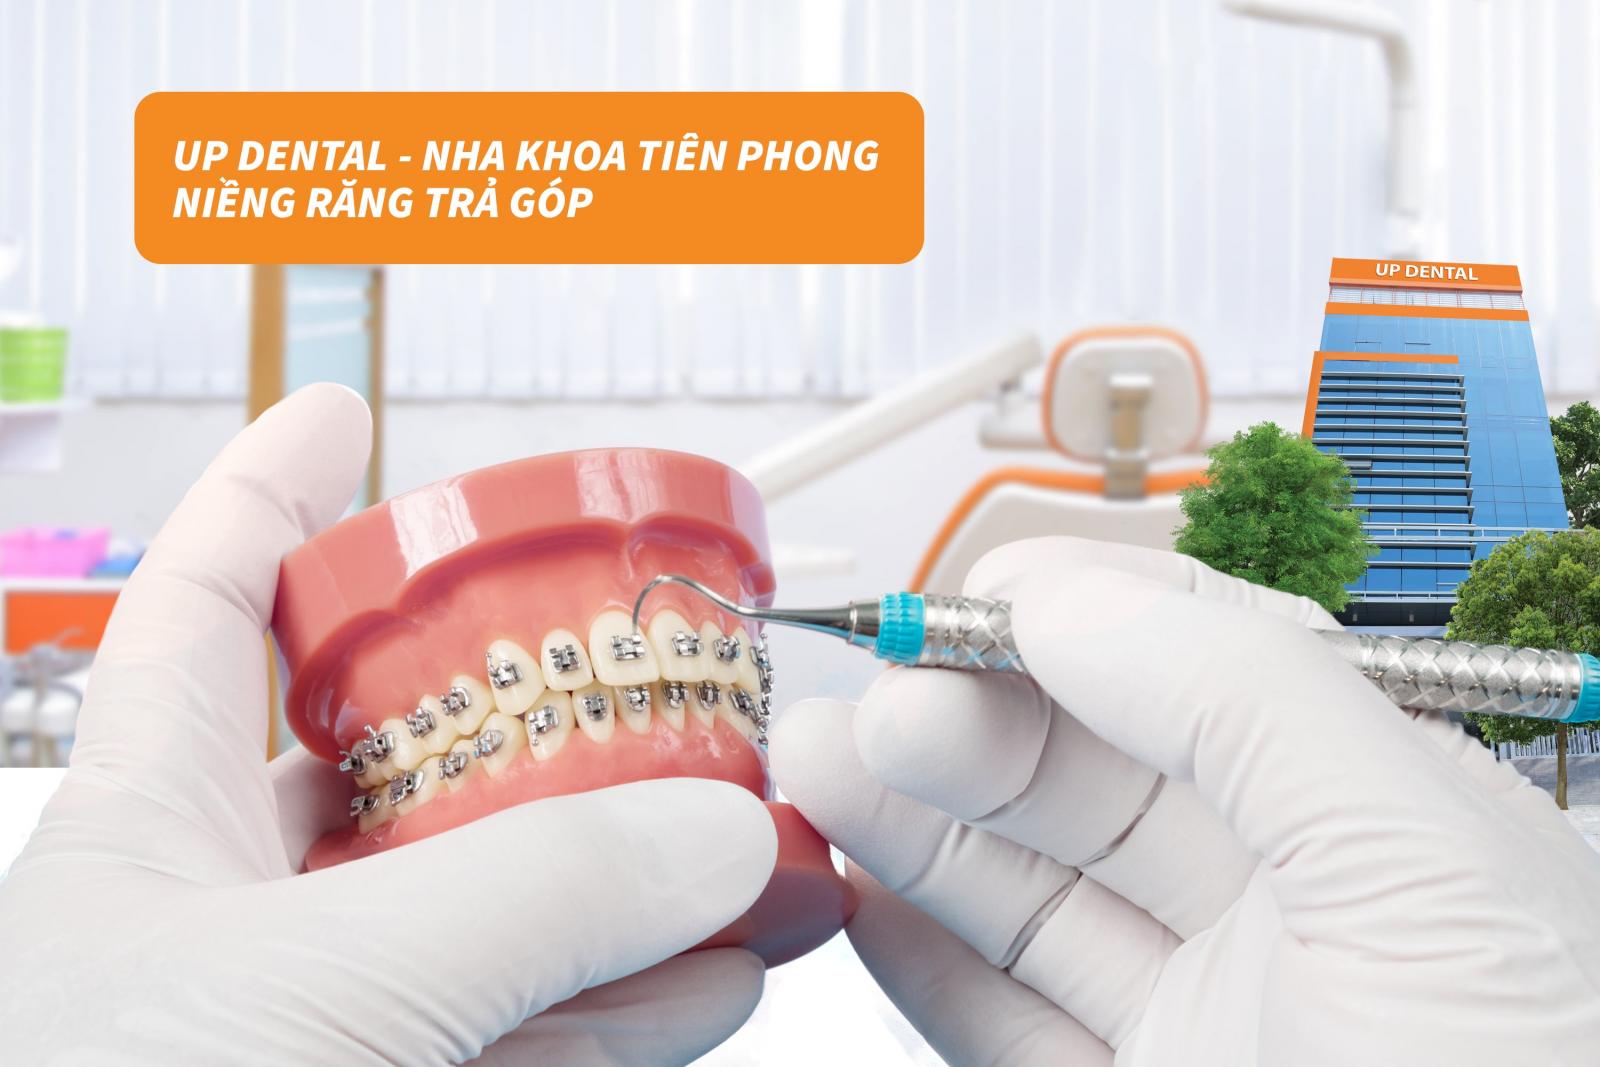 Up Dental - nha khoa tiên phong niềng răng trả góp